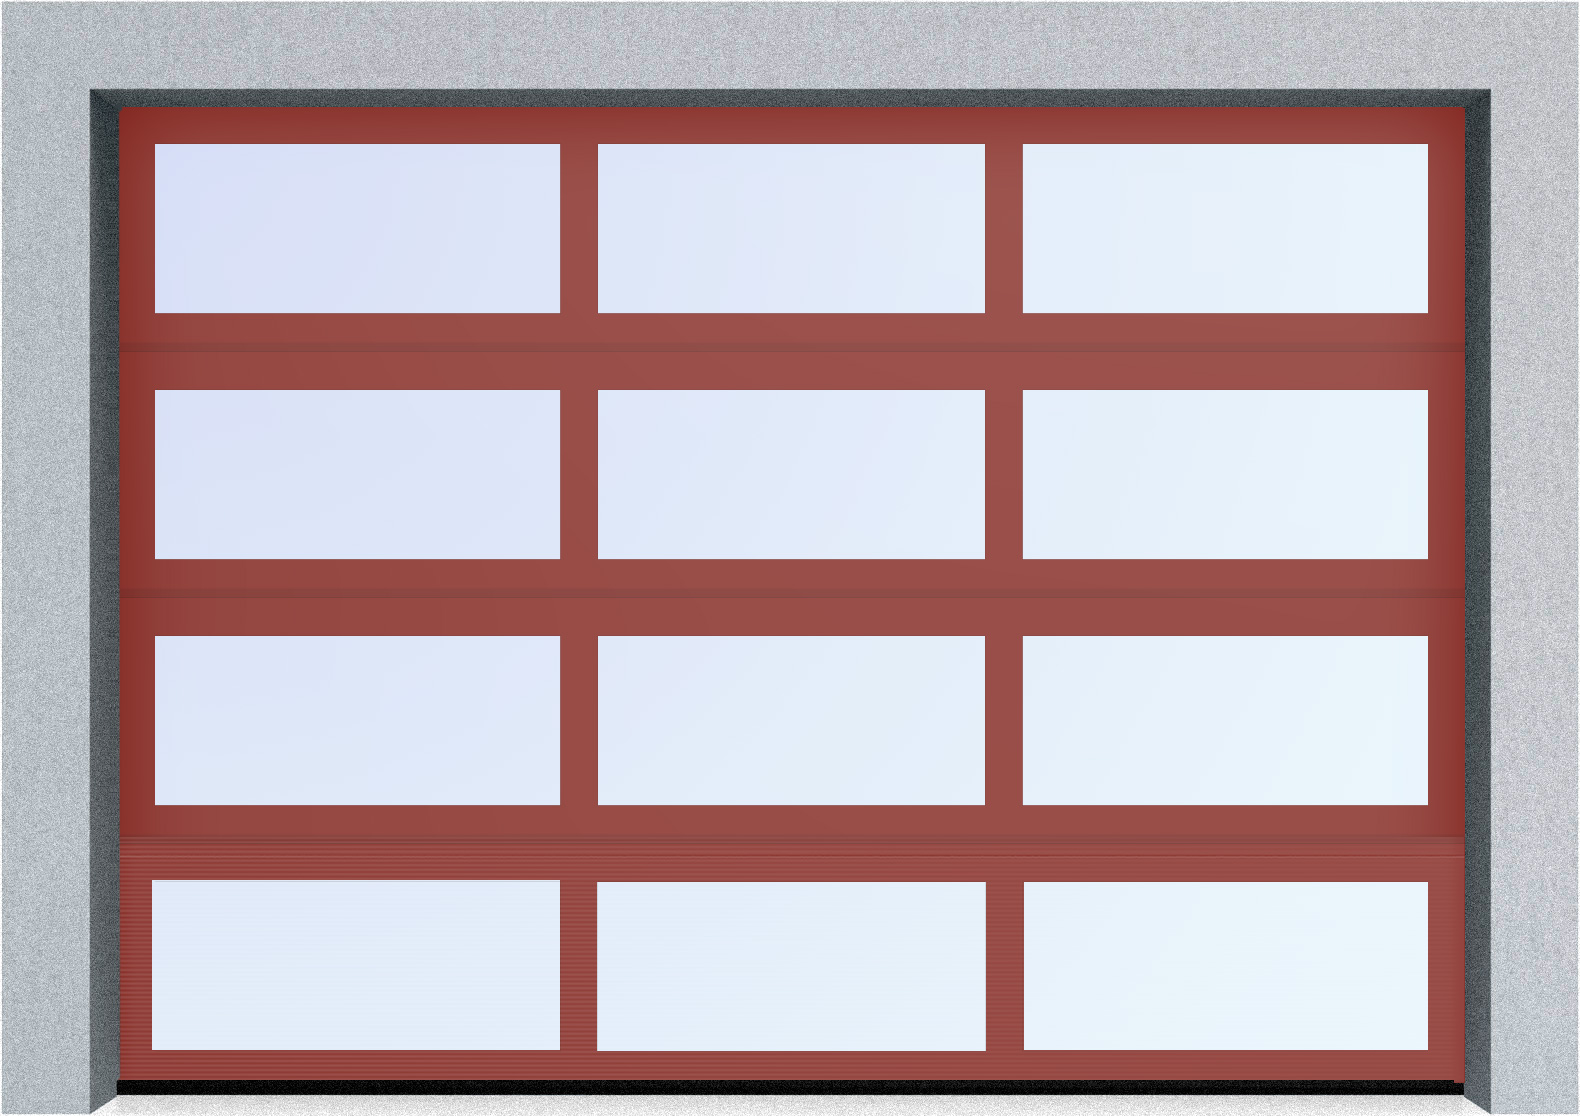  Секционные панорамные ворота серии AluTrend (АЛП) 5250х4500 нижняя панель стандартные цвета, фото 2 